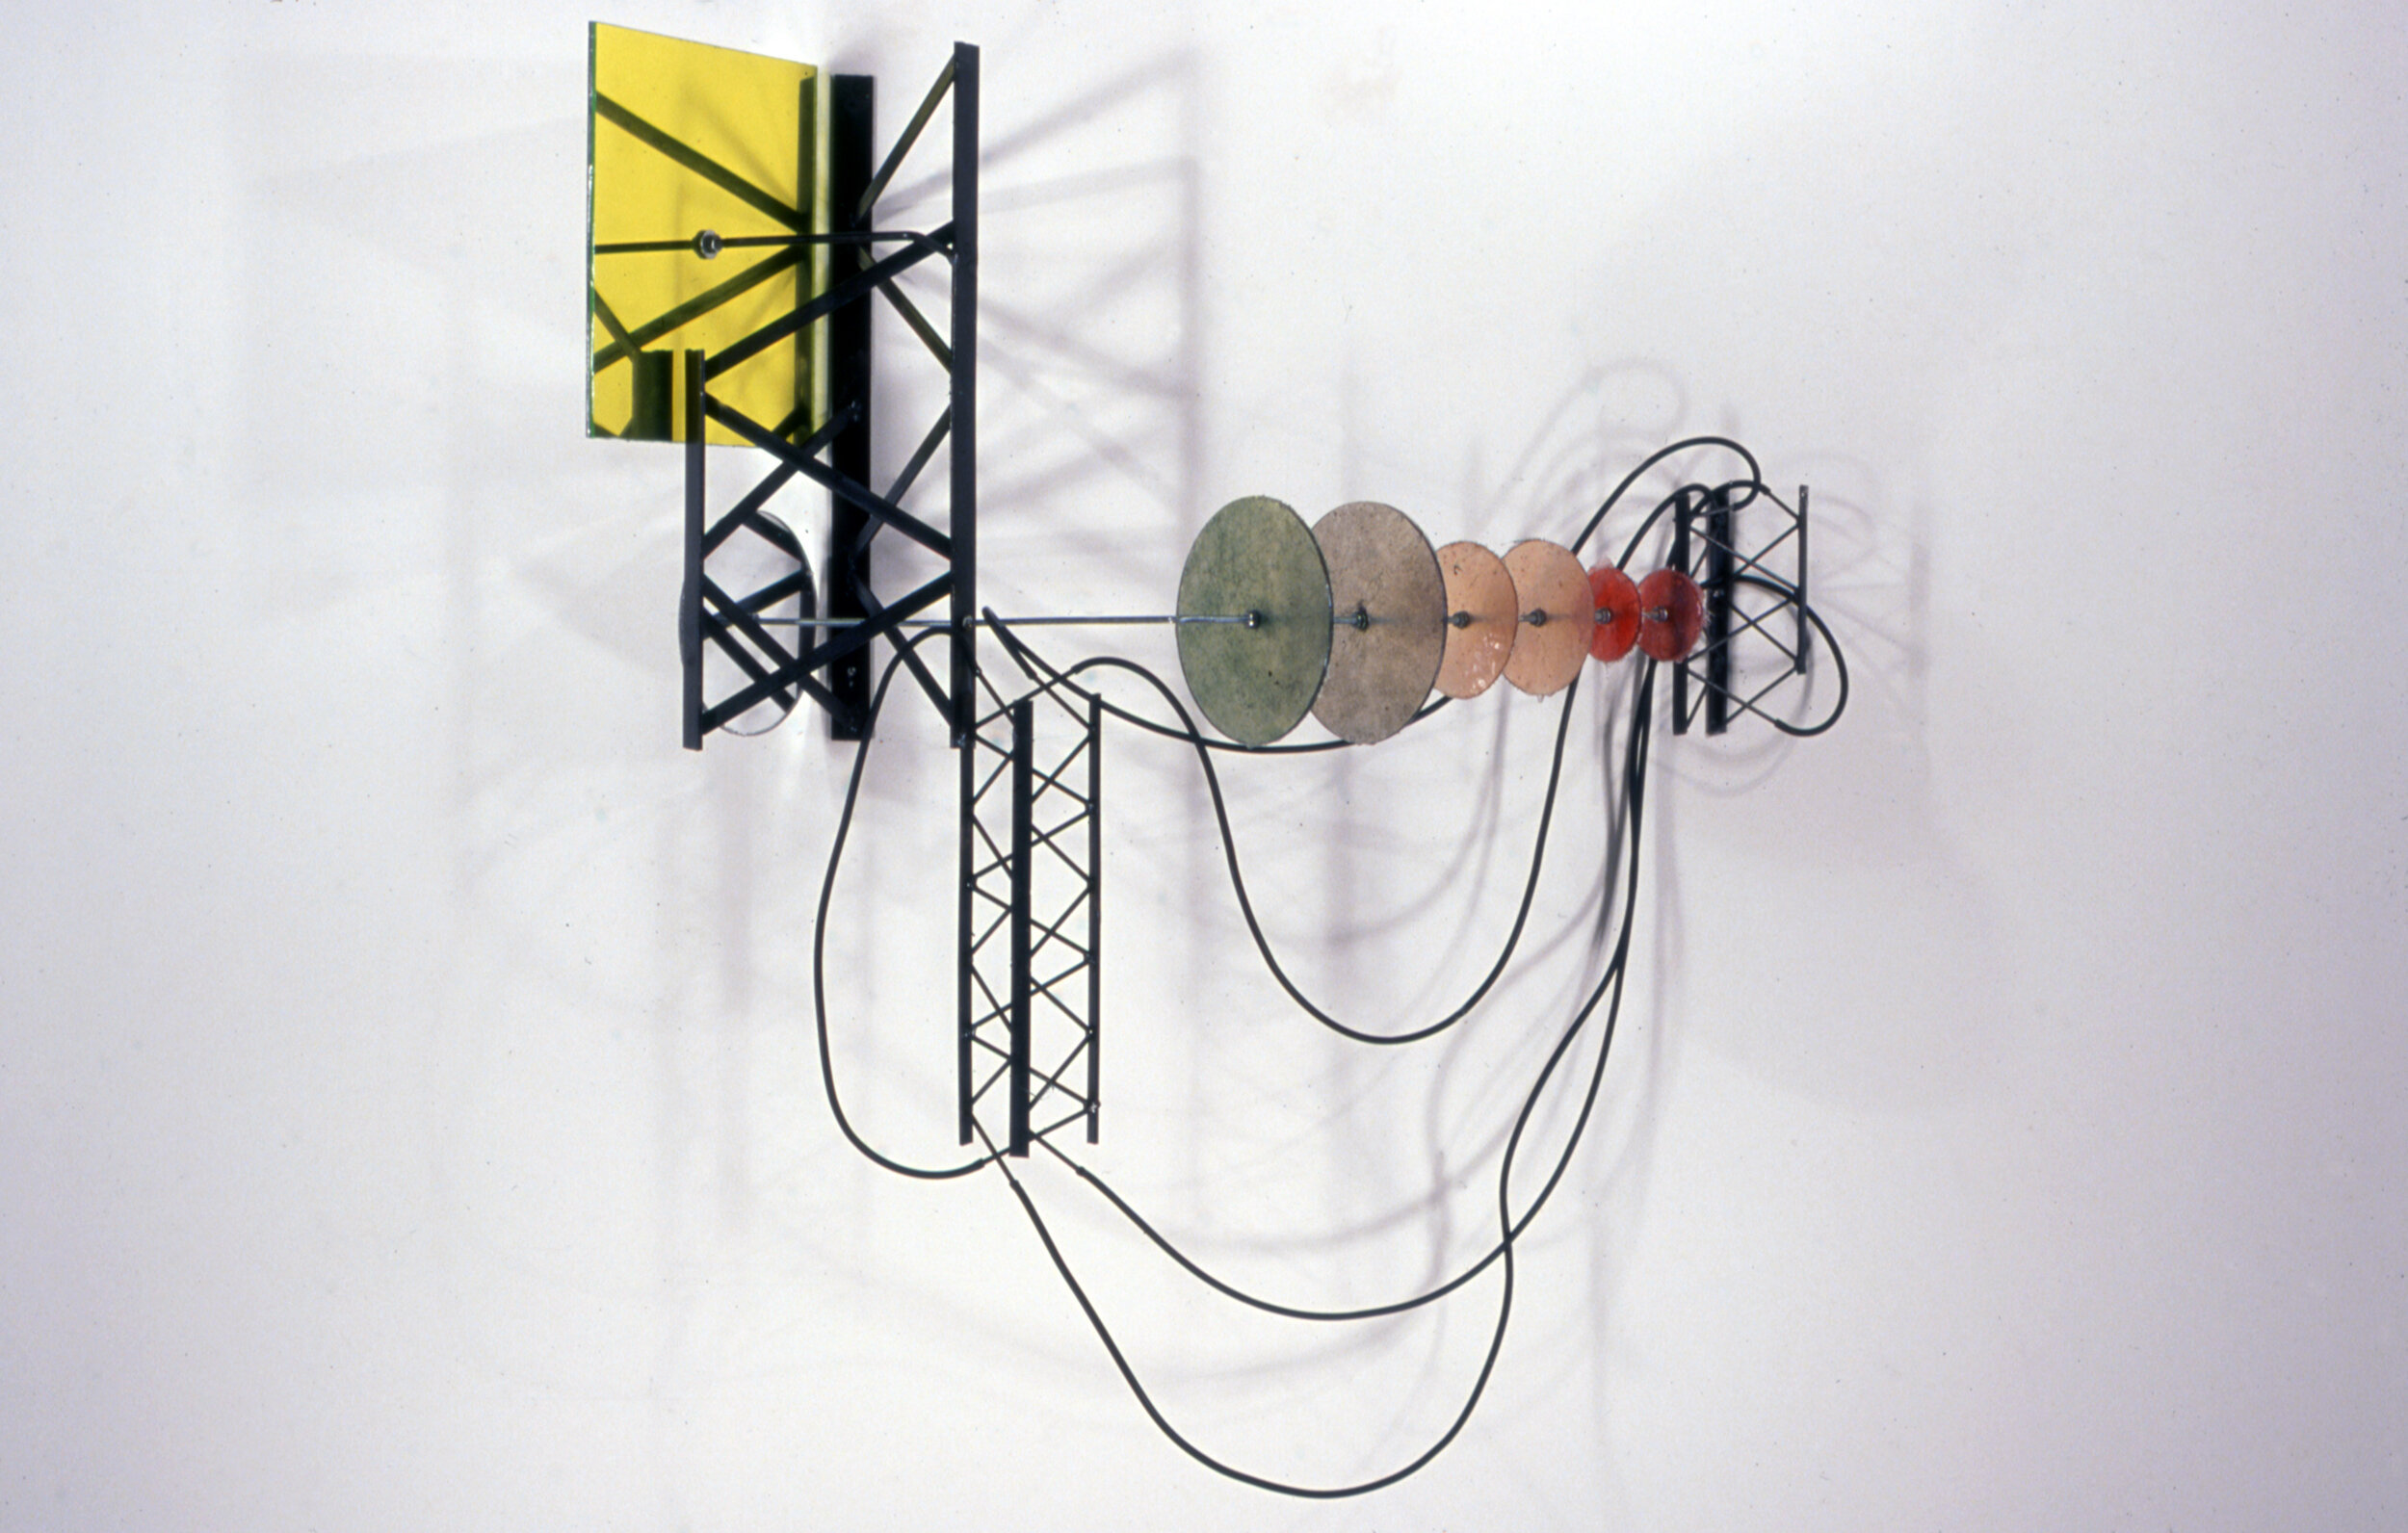  Fits and Starts (2000), steel, fiberglass, pigmented resin, plexiglass, 28 x 31 x 13 inches (71 x 78 x 33 cm) 